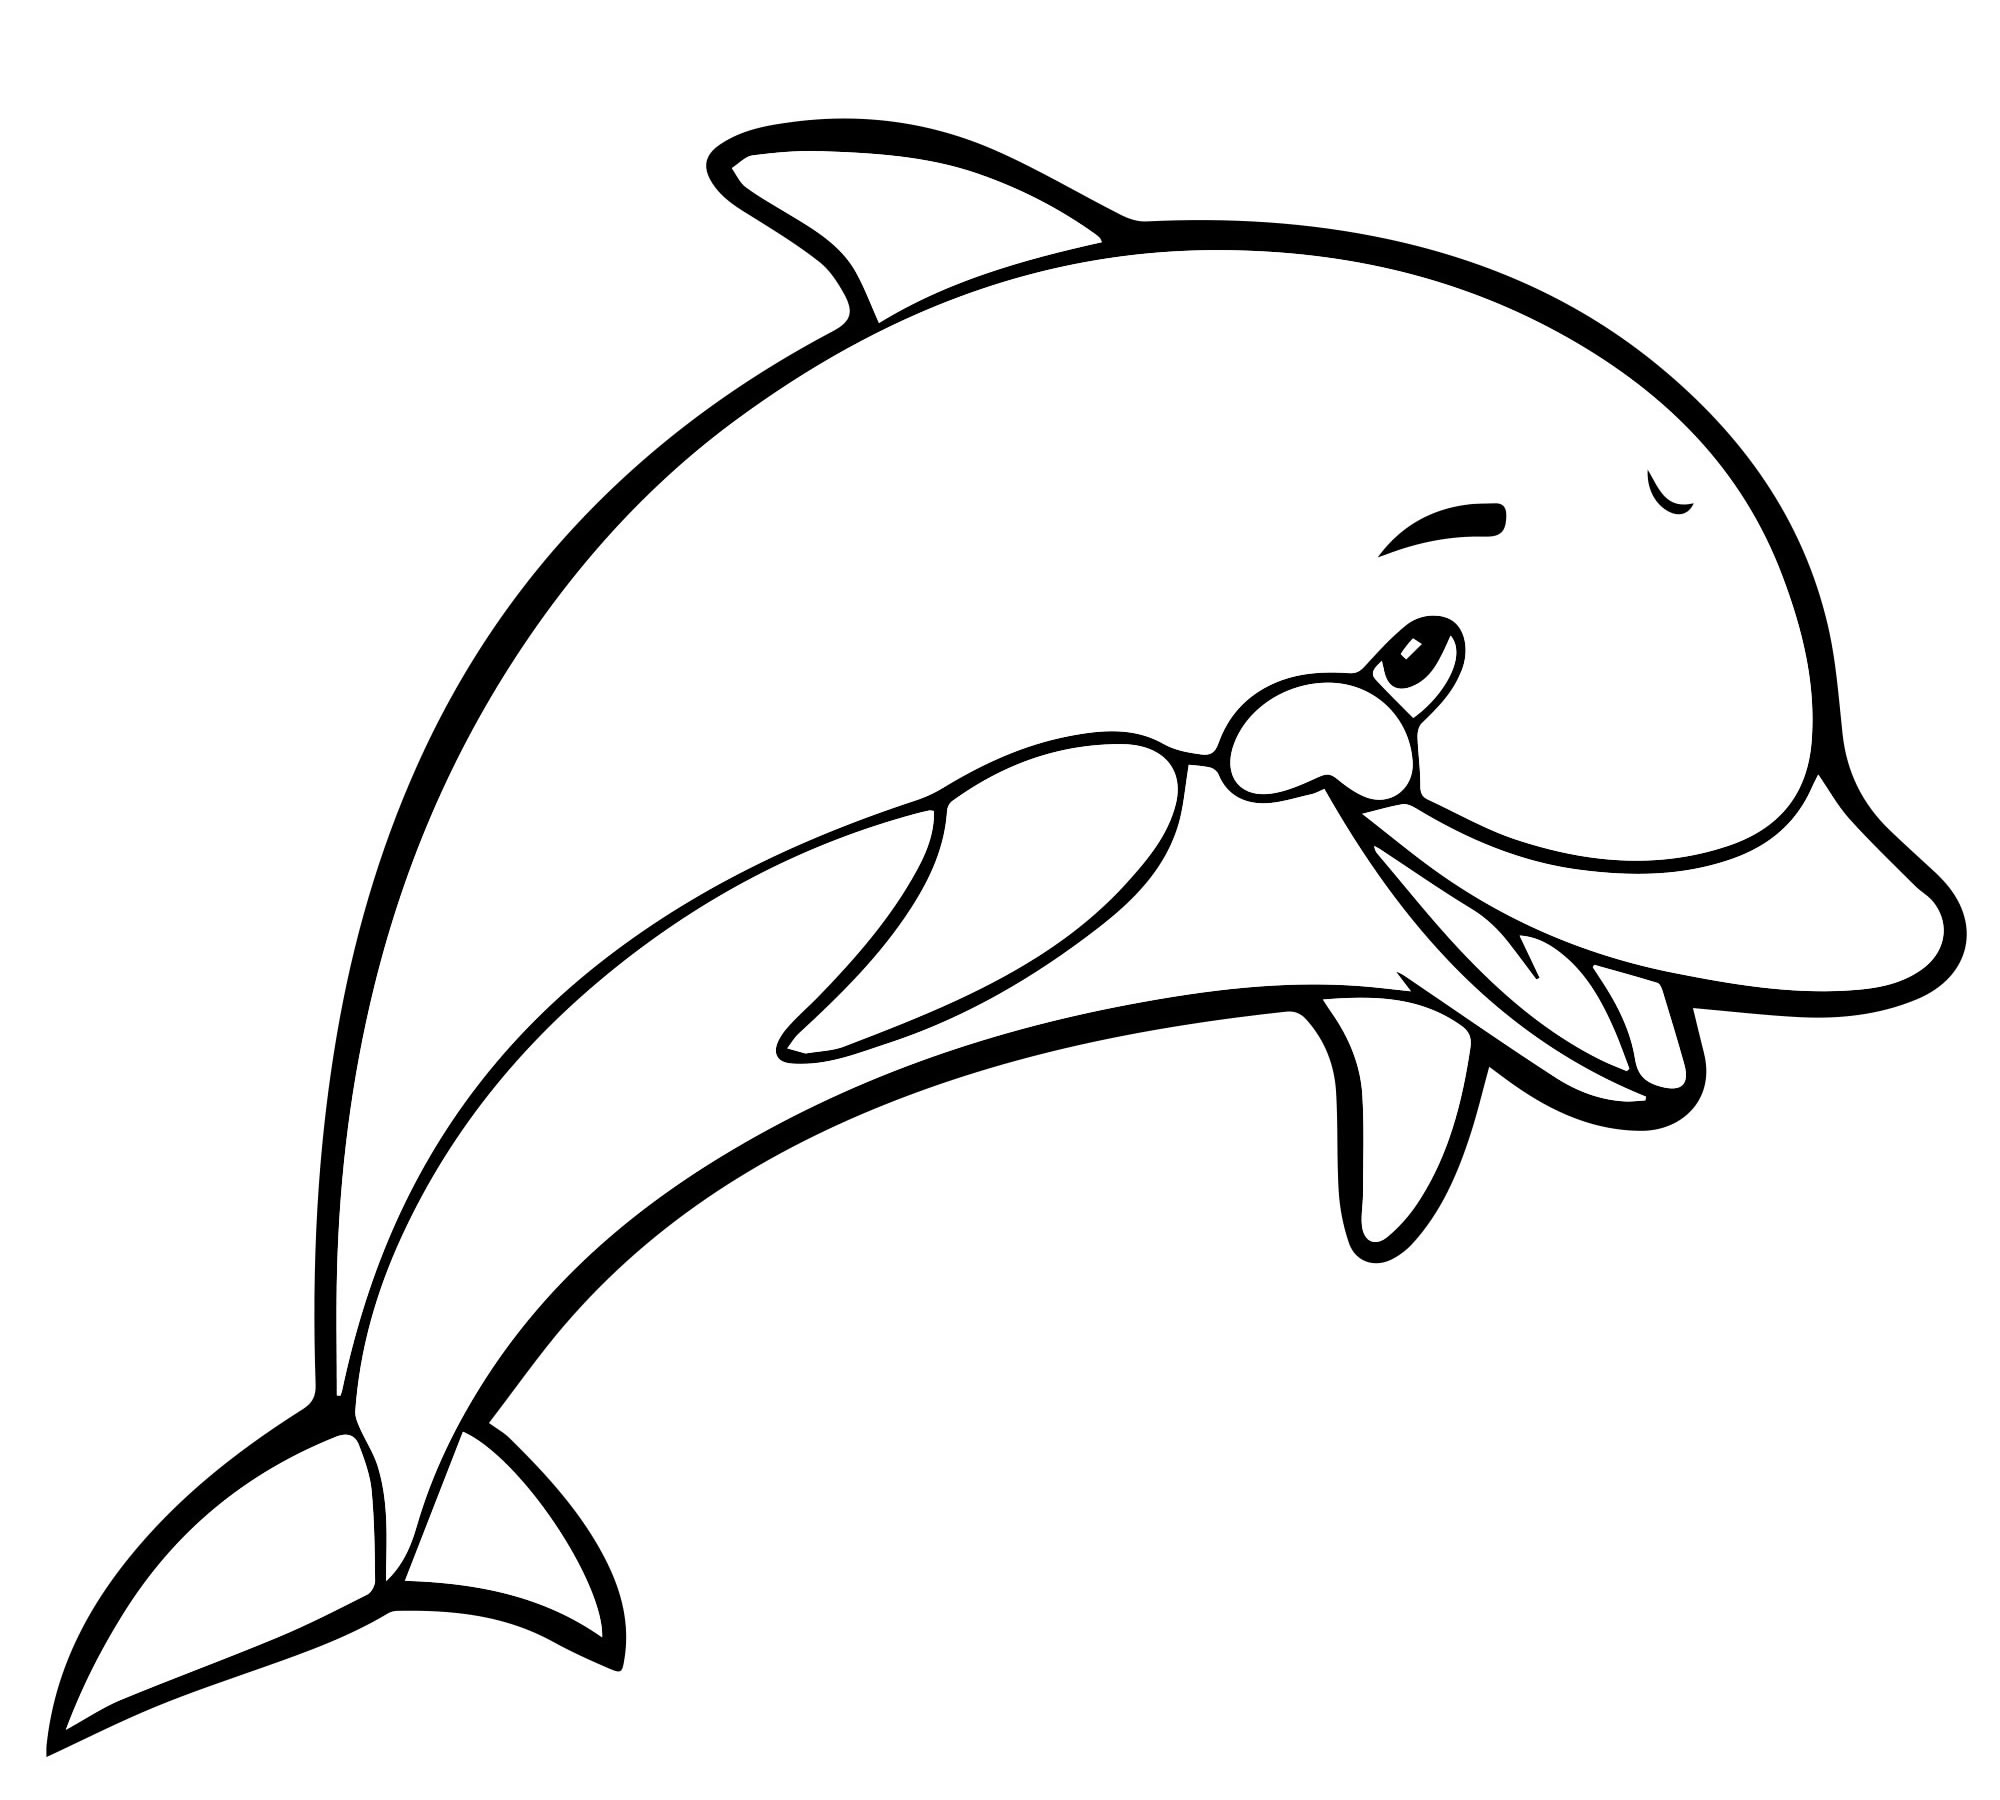 Раскрашивать дельфины. Раскраска "дельфины". Раскраска Дельфин. Дельфин раскраска для детей. Рскраска Дрельмэн.